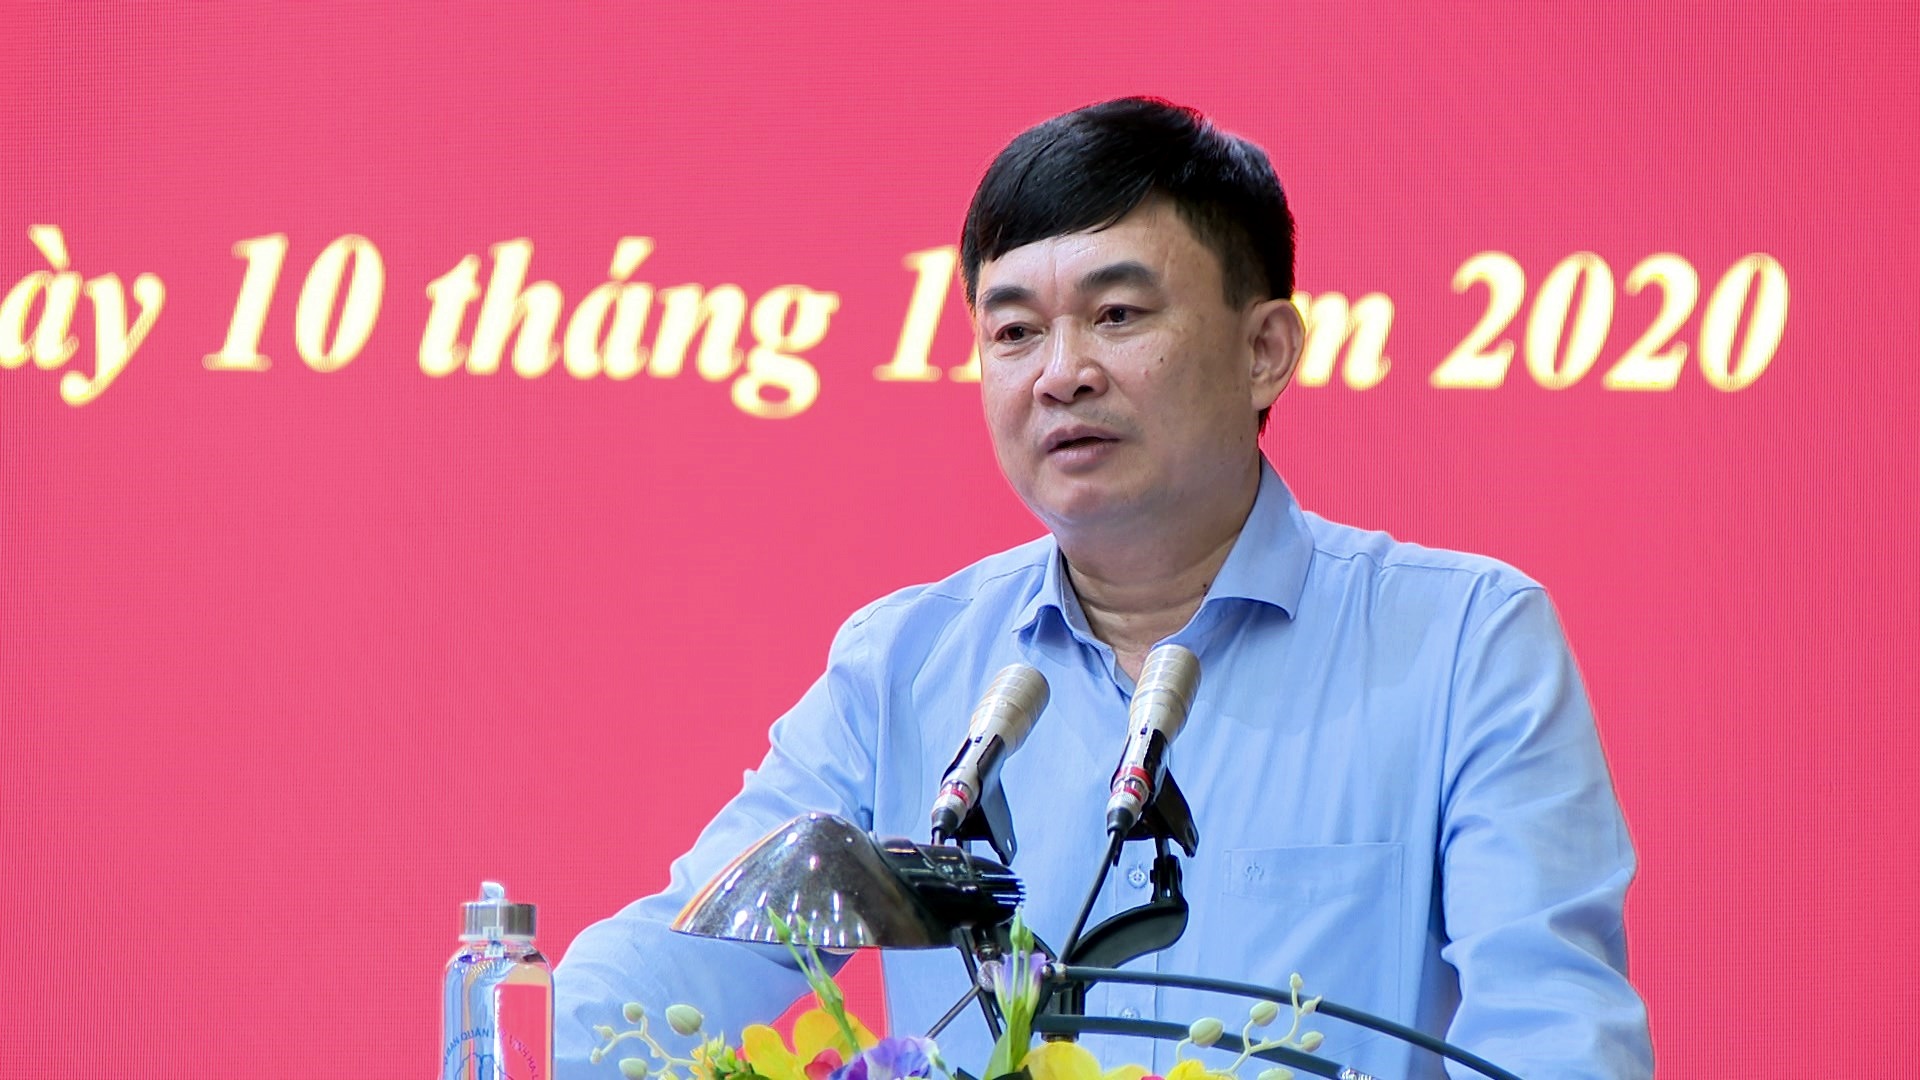 Đồng chí Ngô Hoàng Ngân, Phó Bí thư Thường trực Tỉnh ủy trao quyết định của Tỉnh ủy cho đồng chí Lê Hùng Sơn.